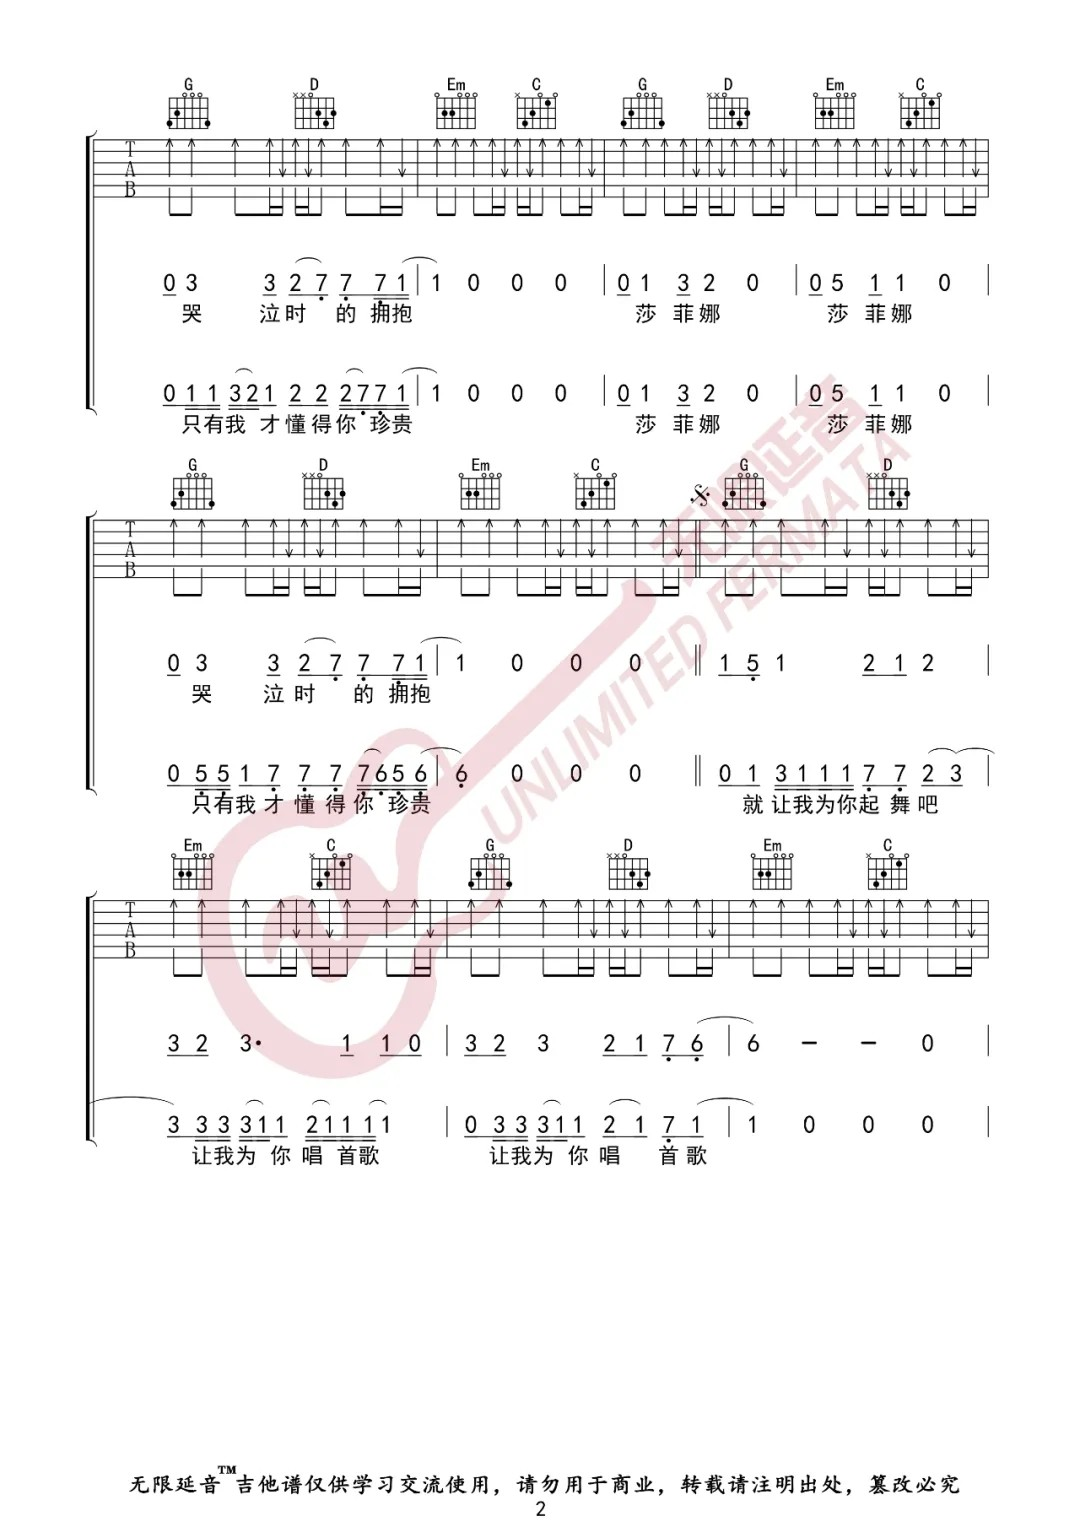 痛仰乐队《为你唱首歌》吉他谱(G调)-Guitar Music Score - GTP吉他谱